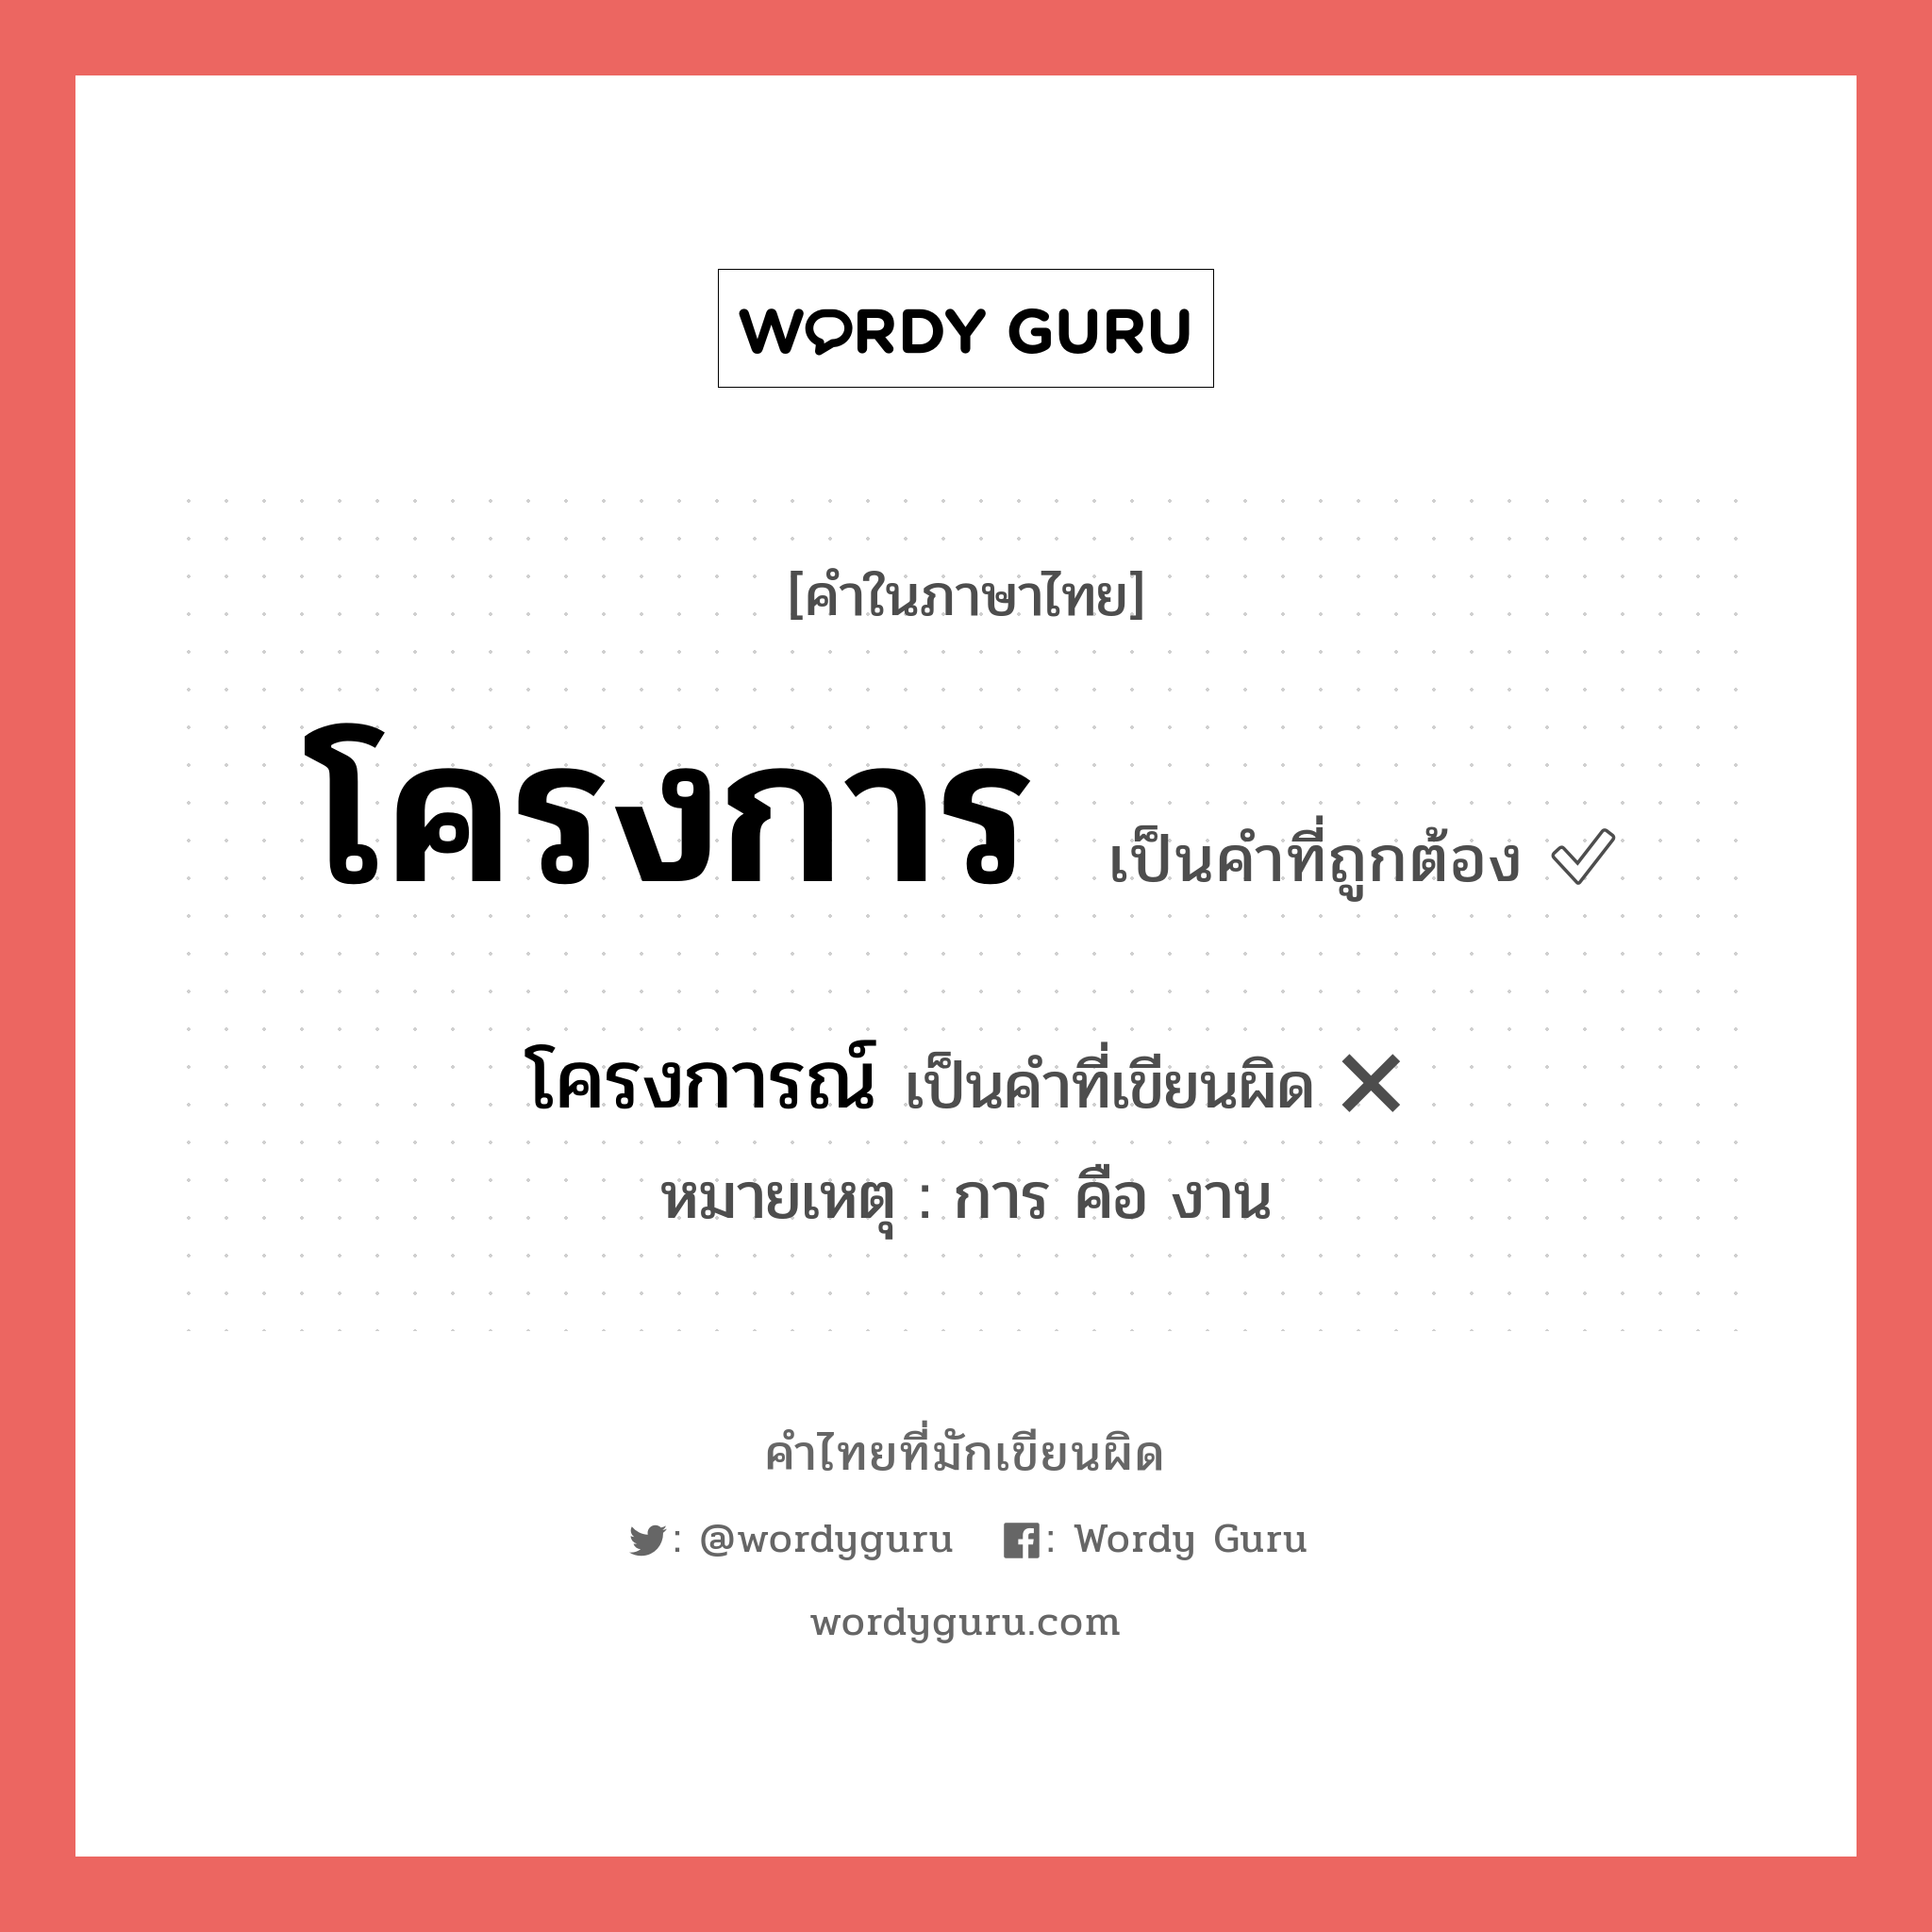 โครงการณ์ หรือ โครงการ คำไหนเขียนถูก?, คำในภาษาไทยที่มักเขียนผิด โครงการณ์ คำที่ผิด ❌ โครงการ หมายเหตุ การ คือ งาน